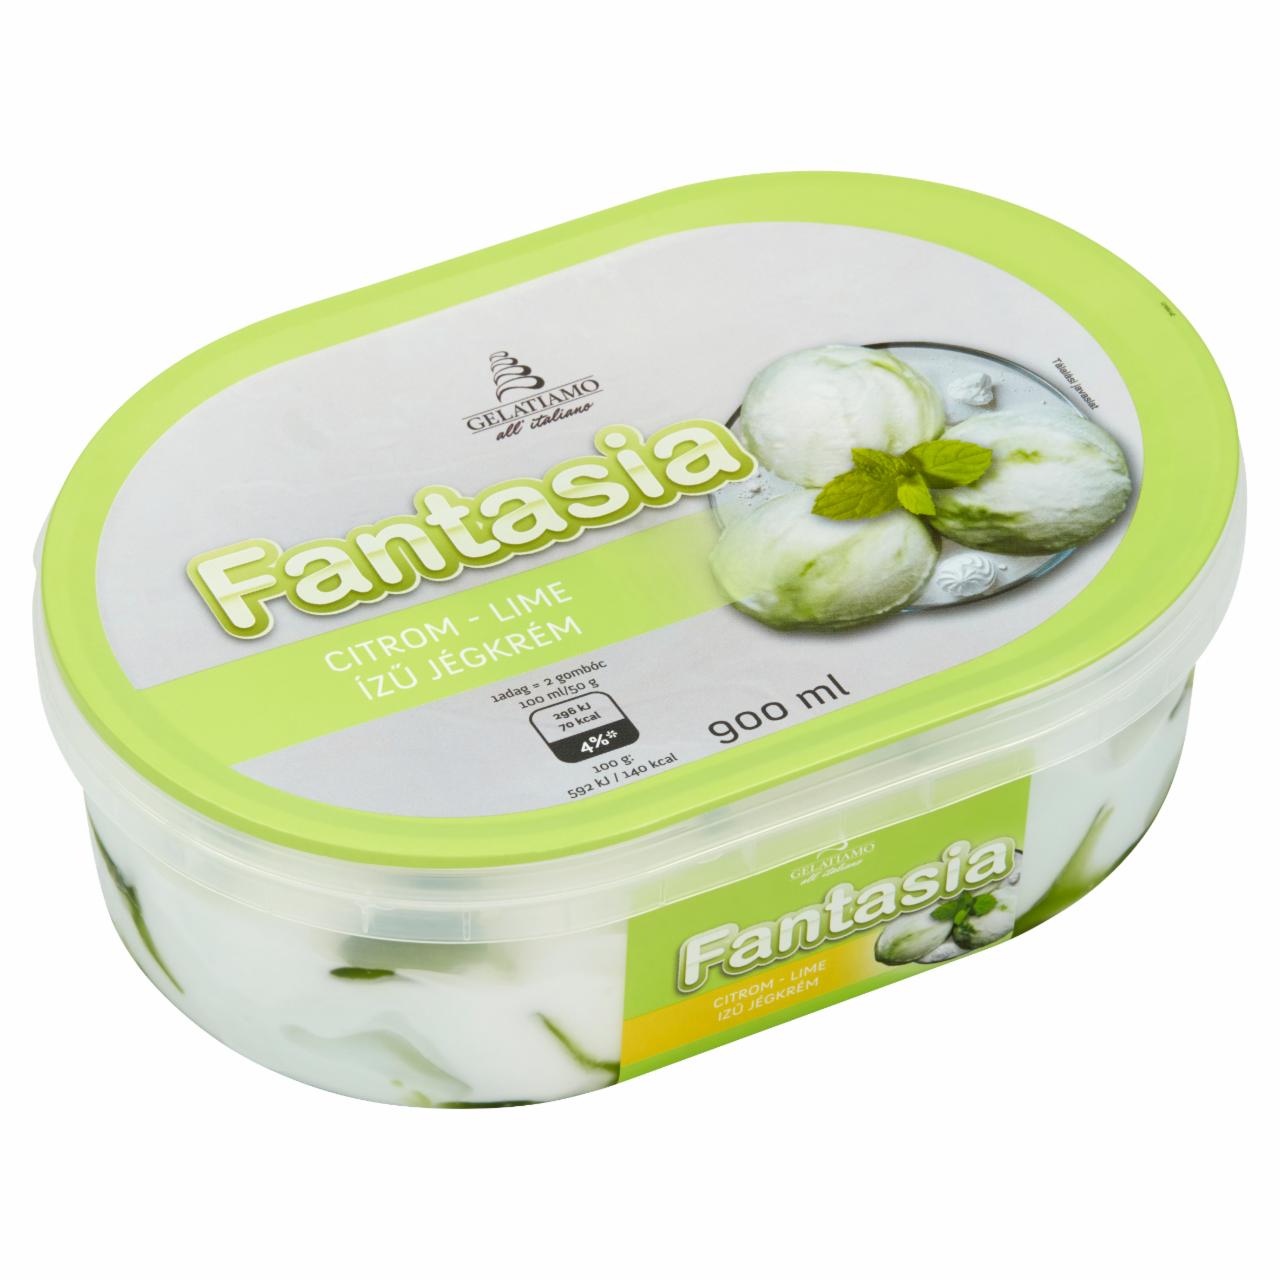 Képek - Gelatiamo Fantasia citrom-lime ízű jégkrém 900 ml